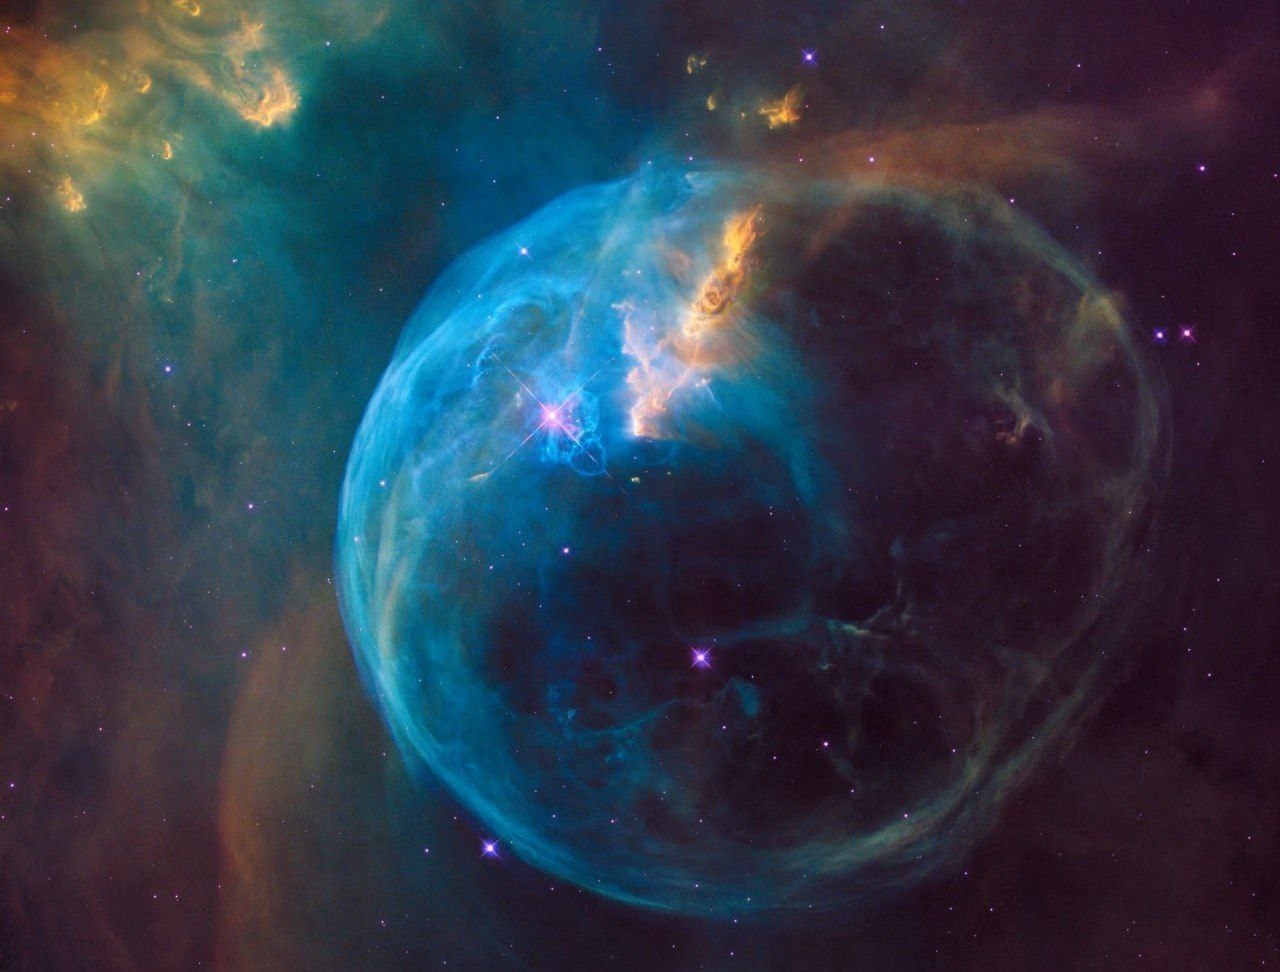 Ученый НАСА Джеймс Уэбб обнаружил новую необычно «пушистую» планету